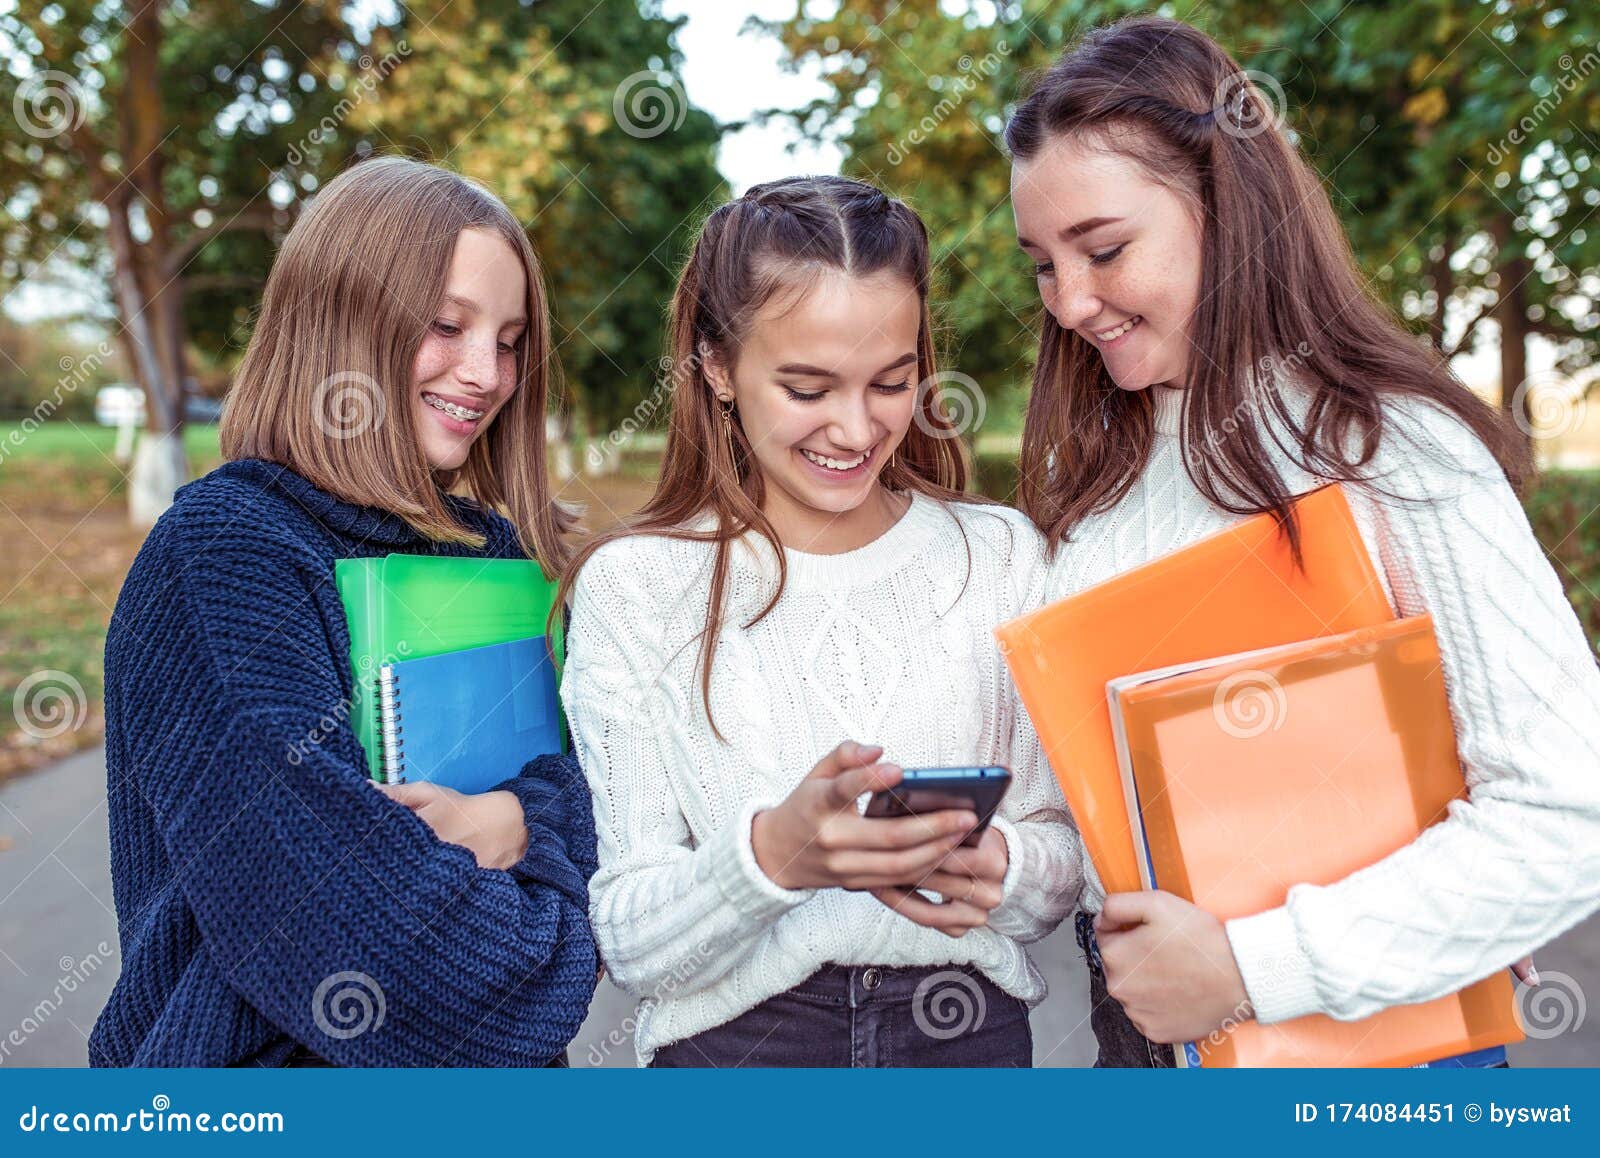 3 Girls Teenagers, Smartphone. Holiday Weekend, Best Friends ...